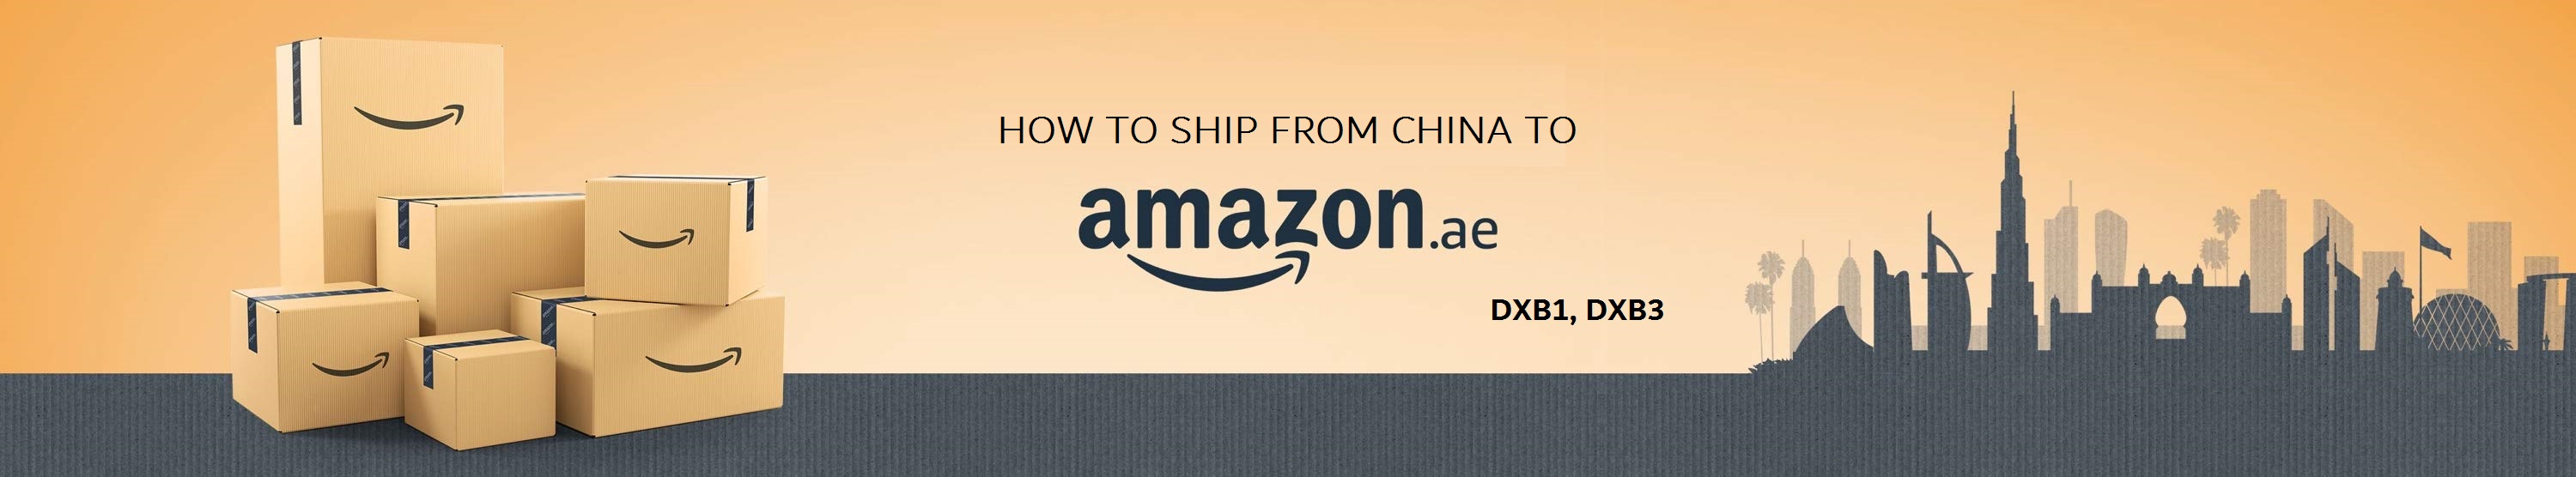 shipping from China to Amazaon FBA warehouse in Dubai